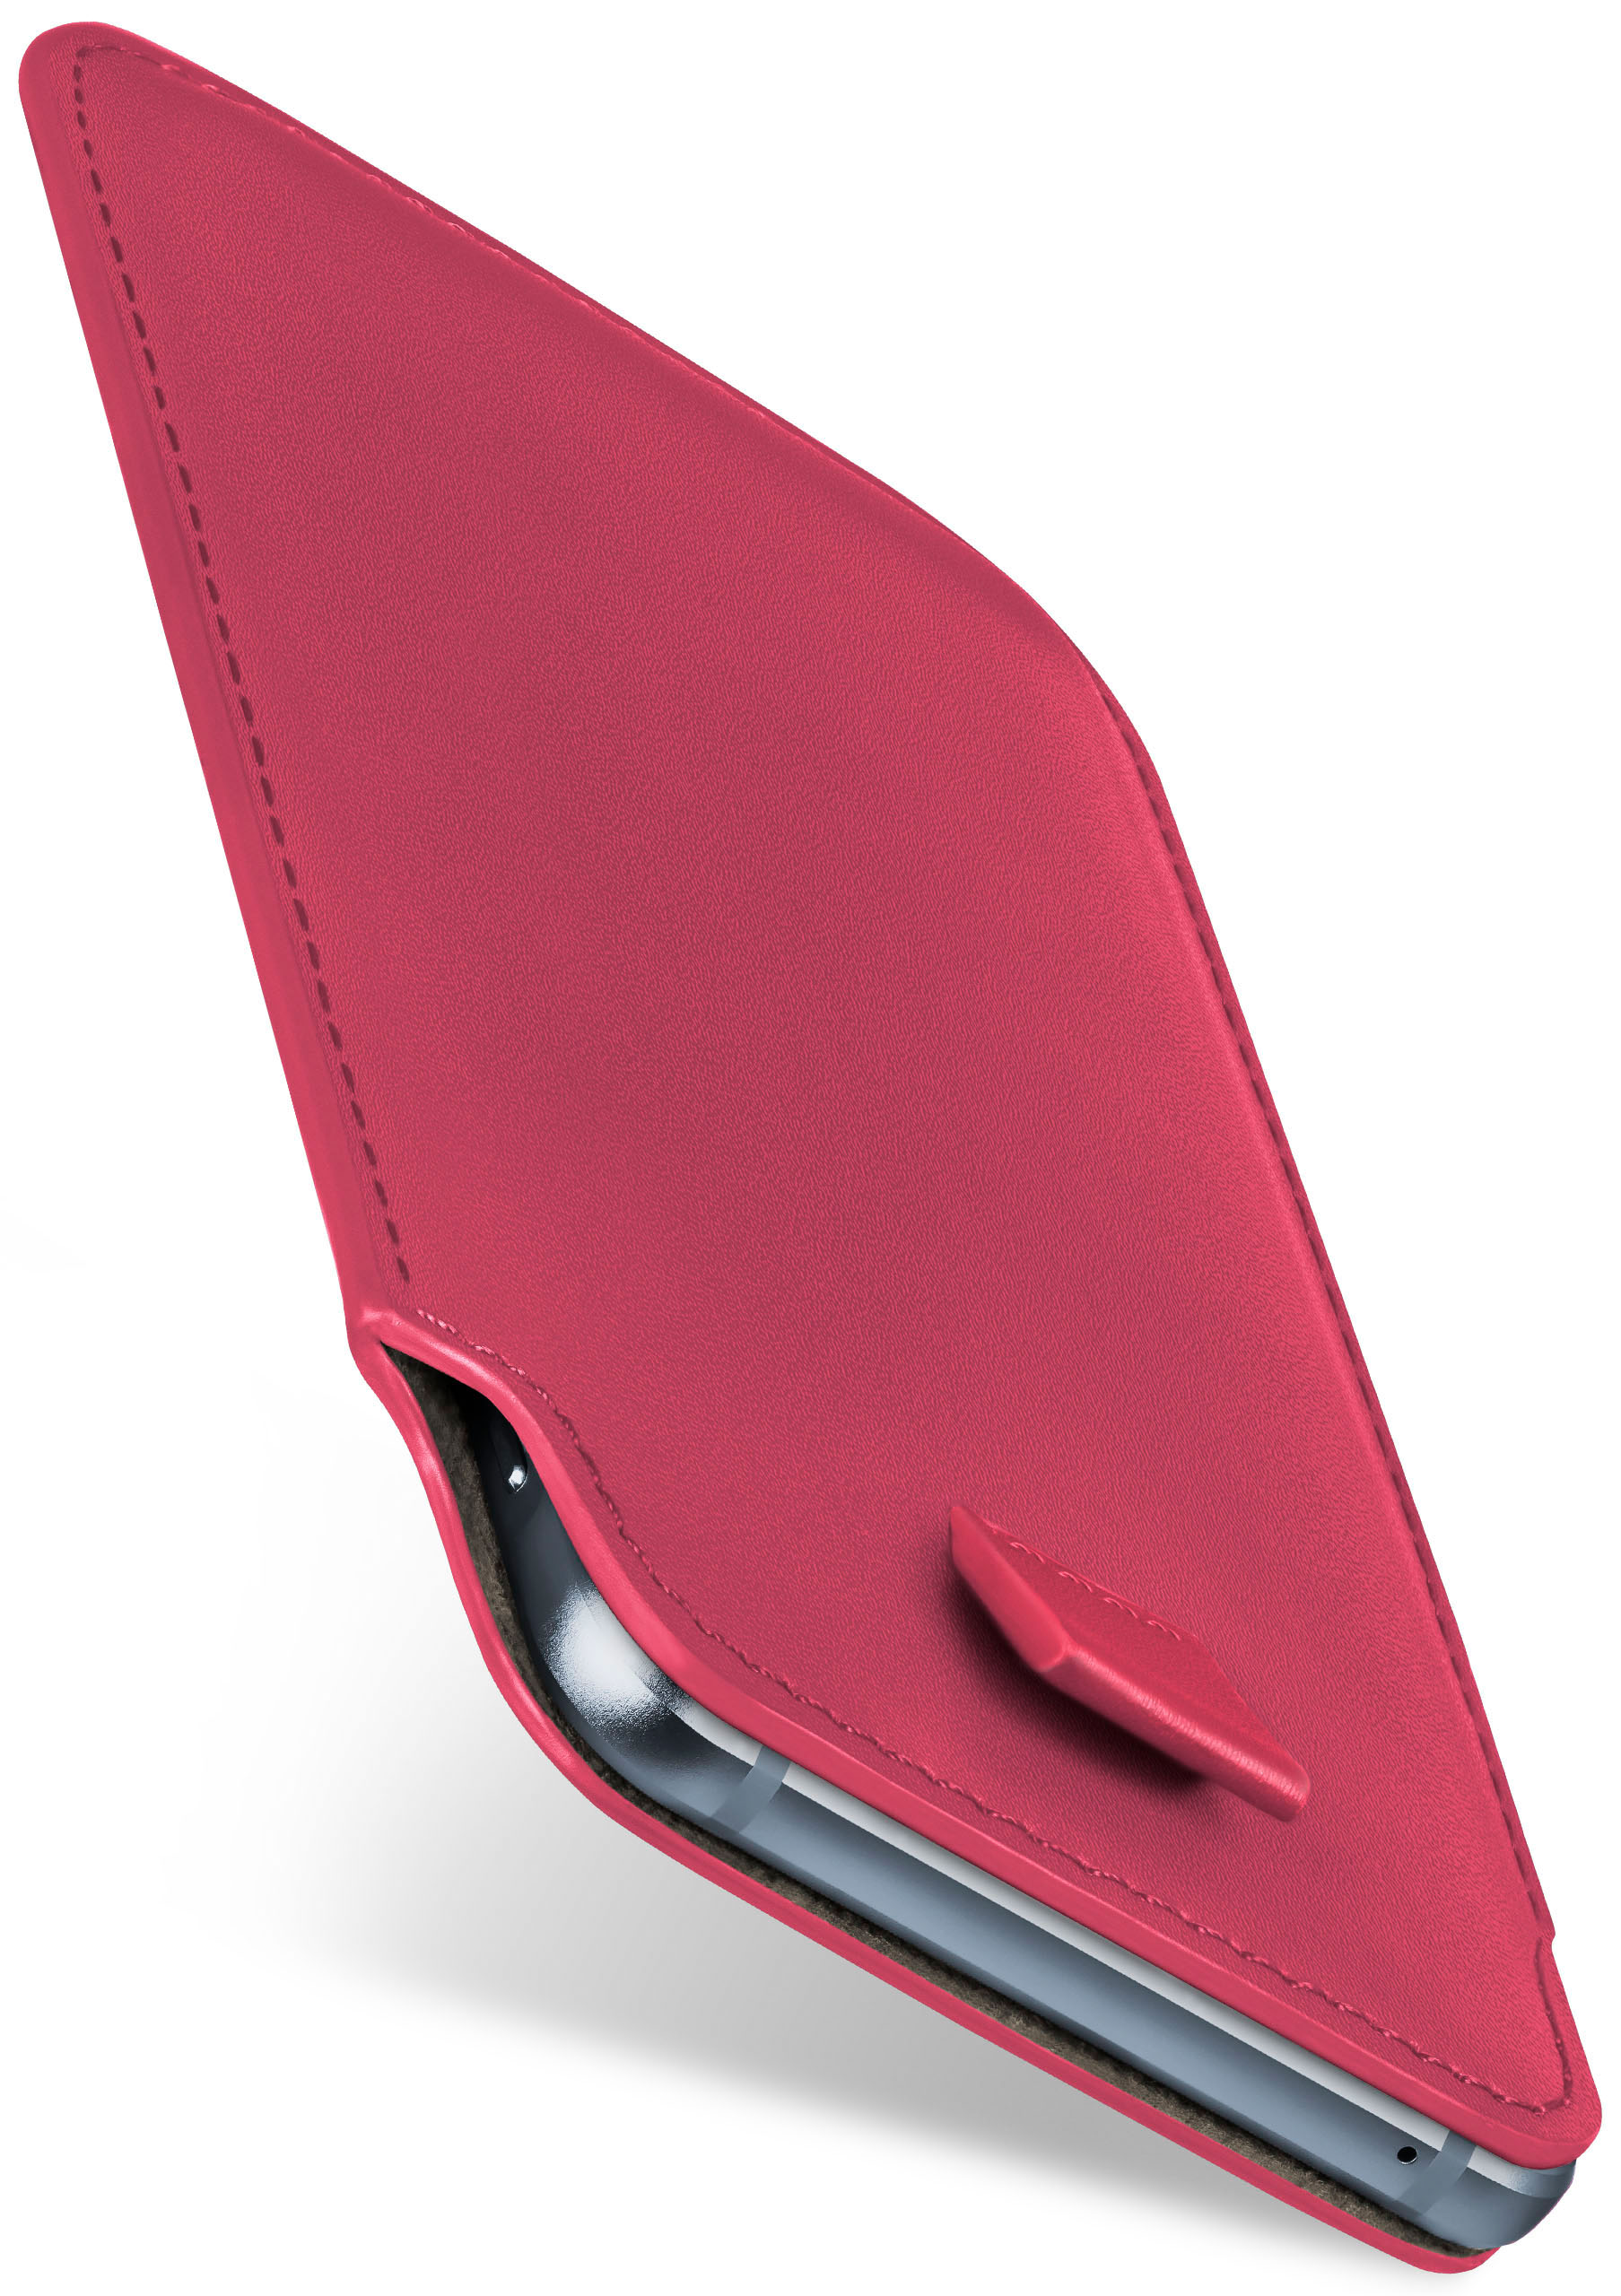 Slide Case, Motorola, G8 Cover, Berry-Fuchsia Moto MOEX Full Power,